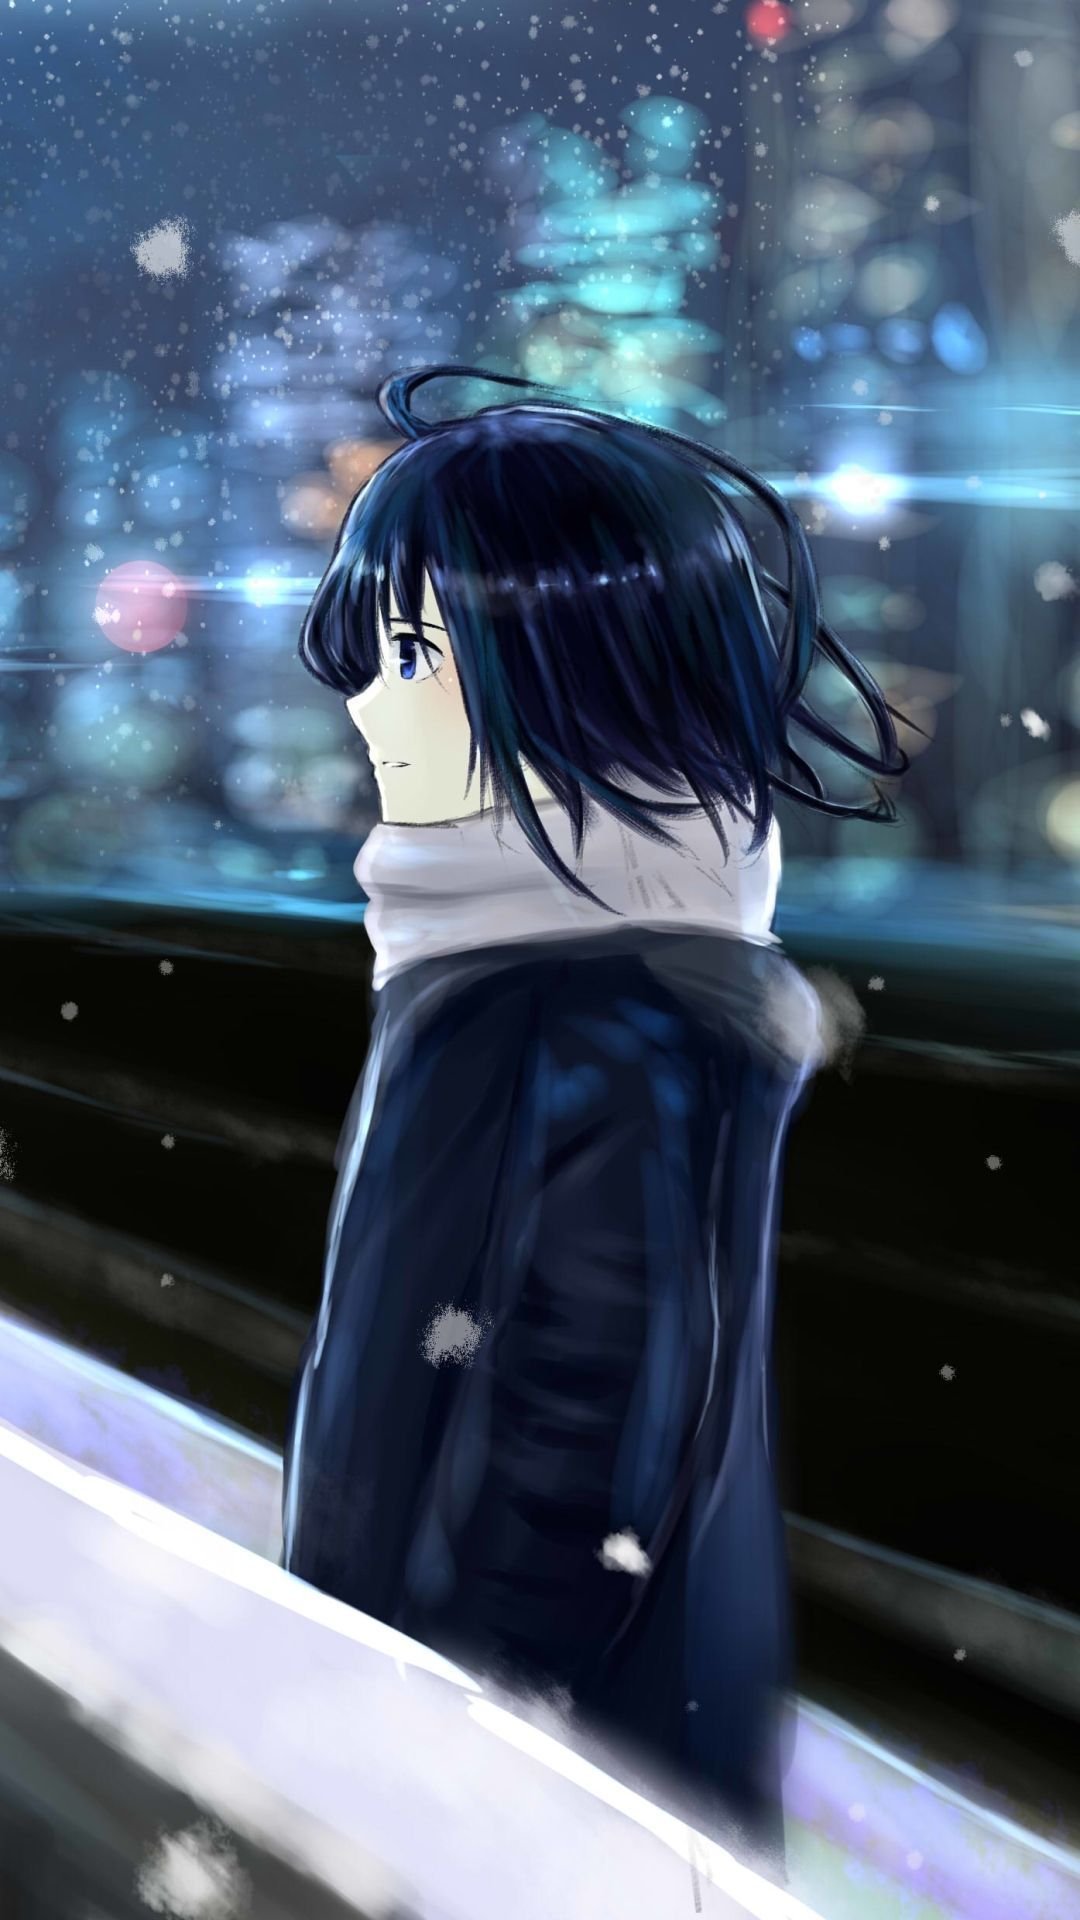 Sad Anime Girl Crying in Rain Alone